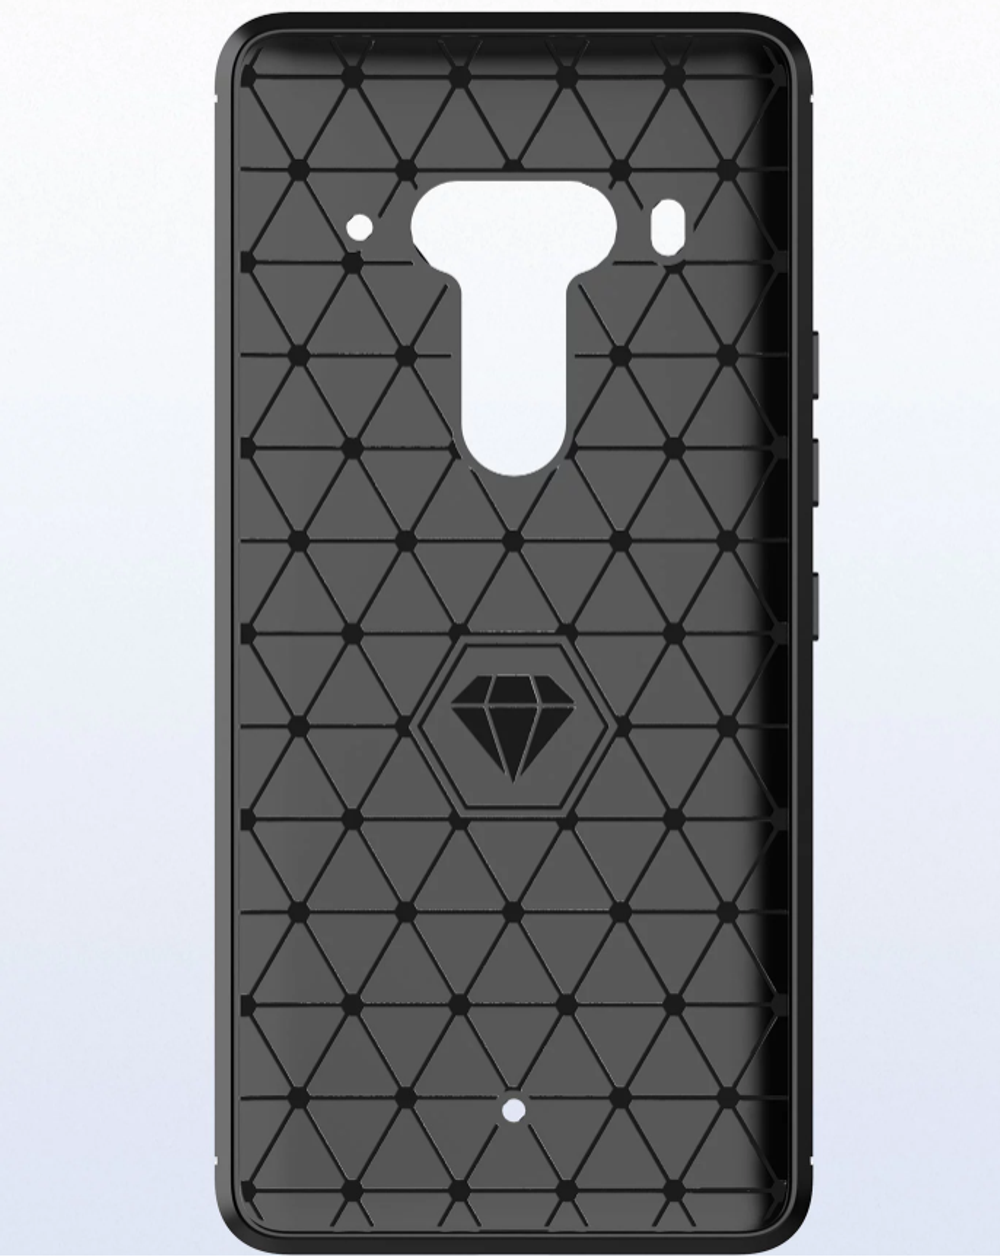 Чехол для HTC U12 Plus (Exodus 1) цвет Black (черный), серия Carbon от Caseport